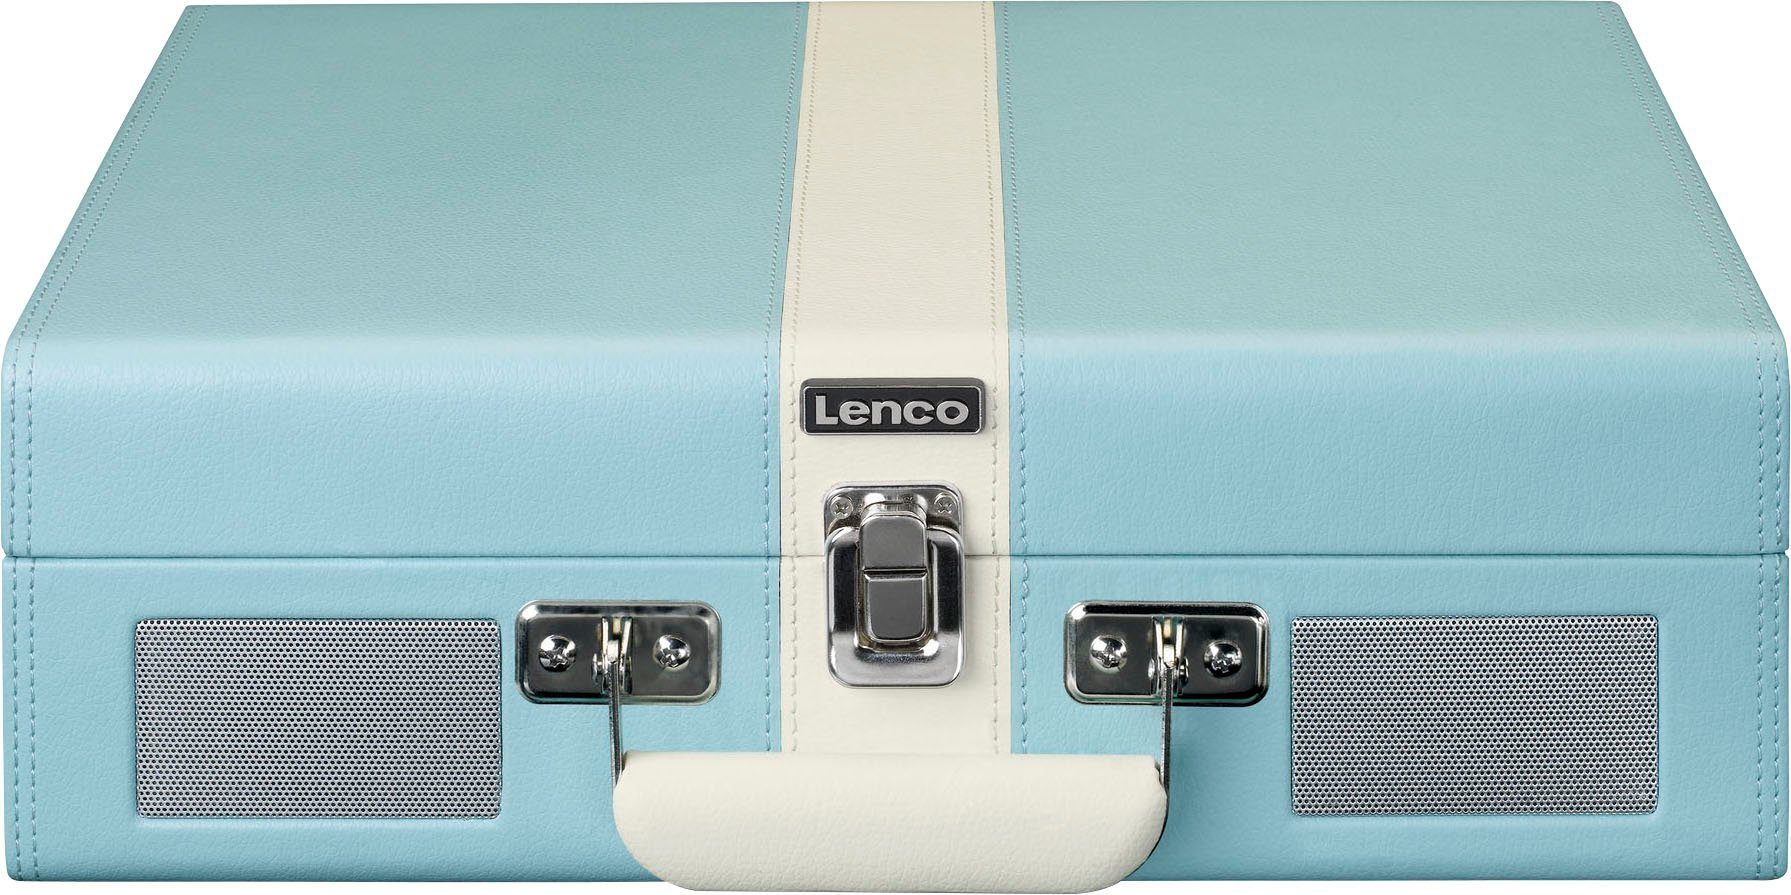 Lenco Koffer-Plattenspieler mit Plattenspieler (Riemenantrieb) und Lsp. Blau-Weiß eingebauten BT